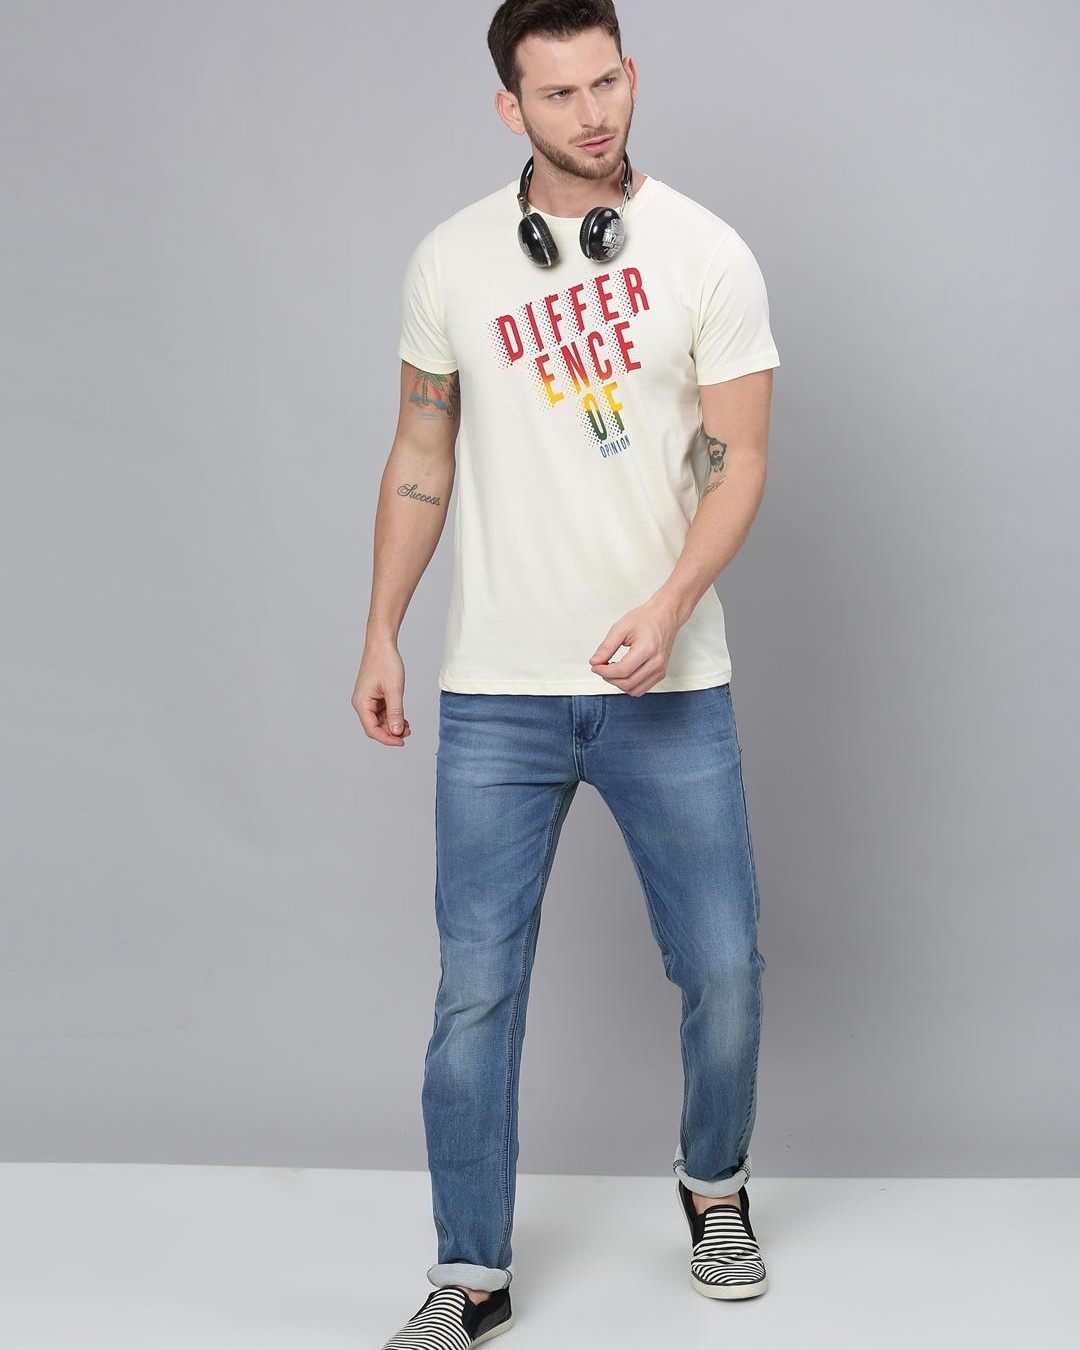 Buy Men's White Typography T-shirt for Men White Online at Bewakoof